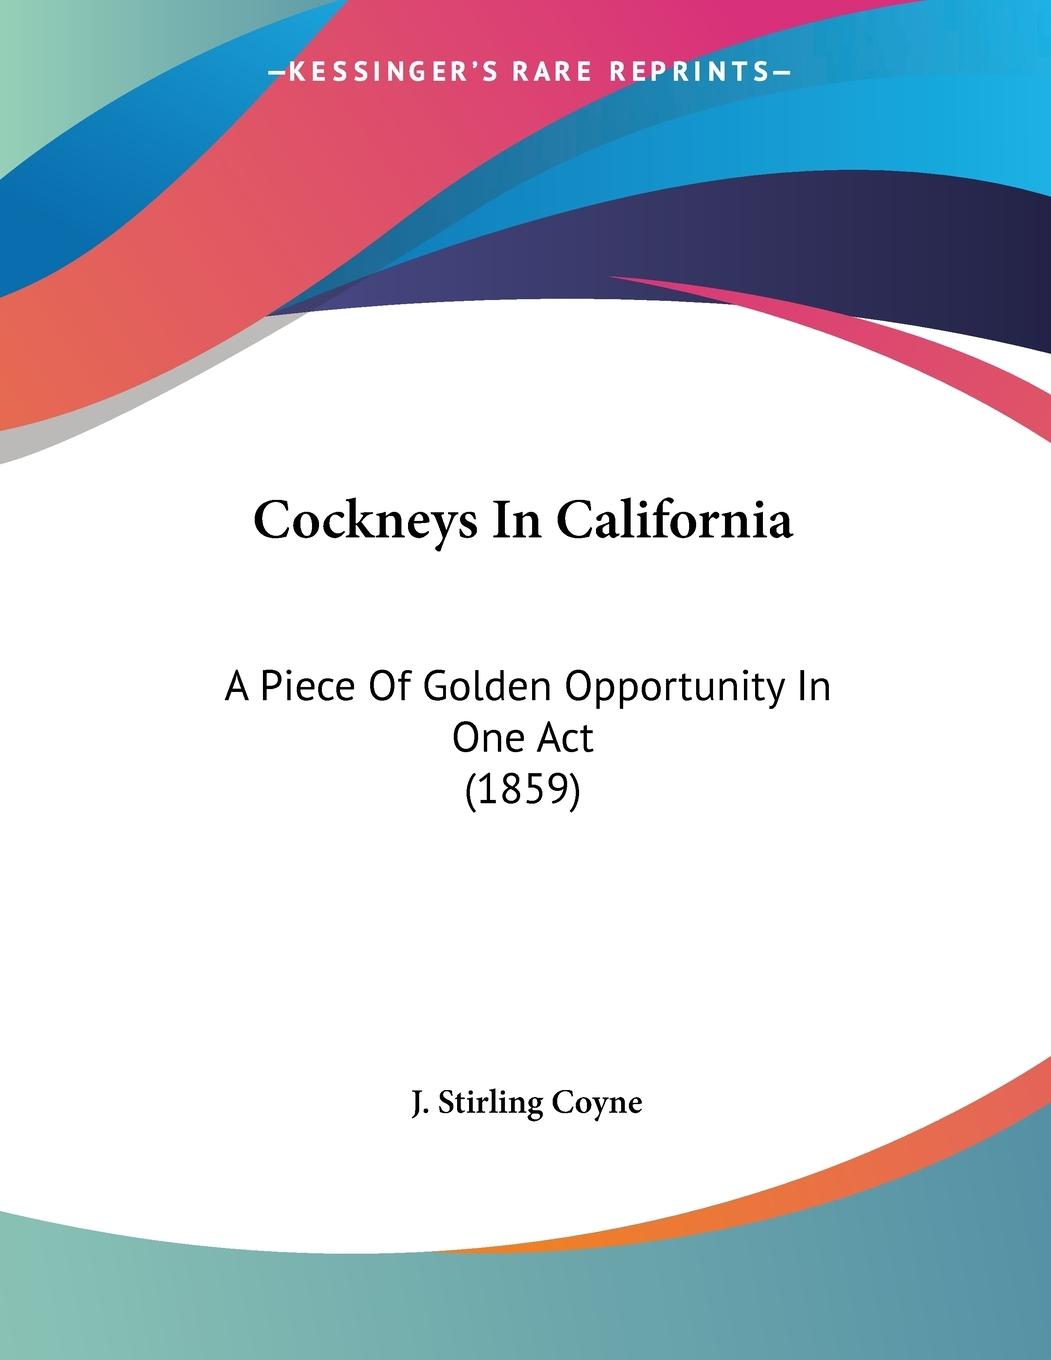 Cockneys In California - Coyne, J. Stirling